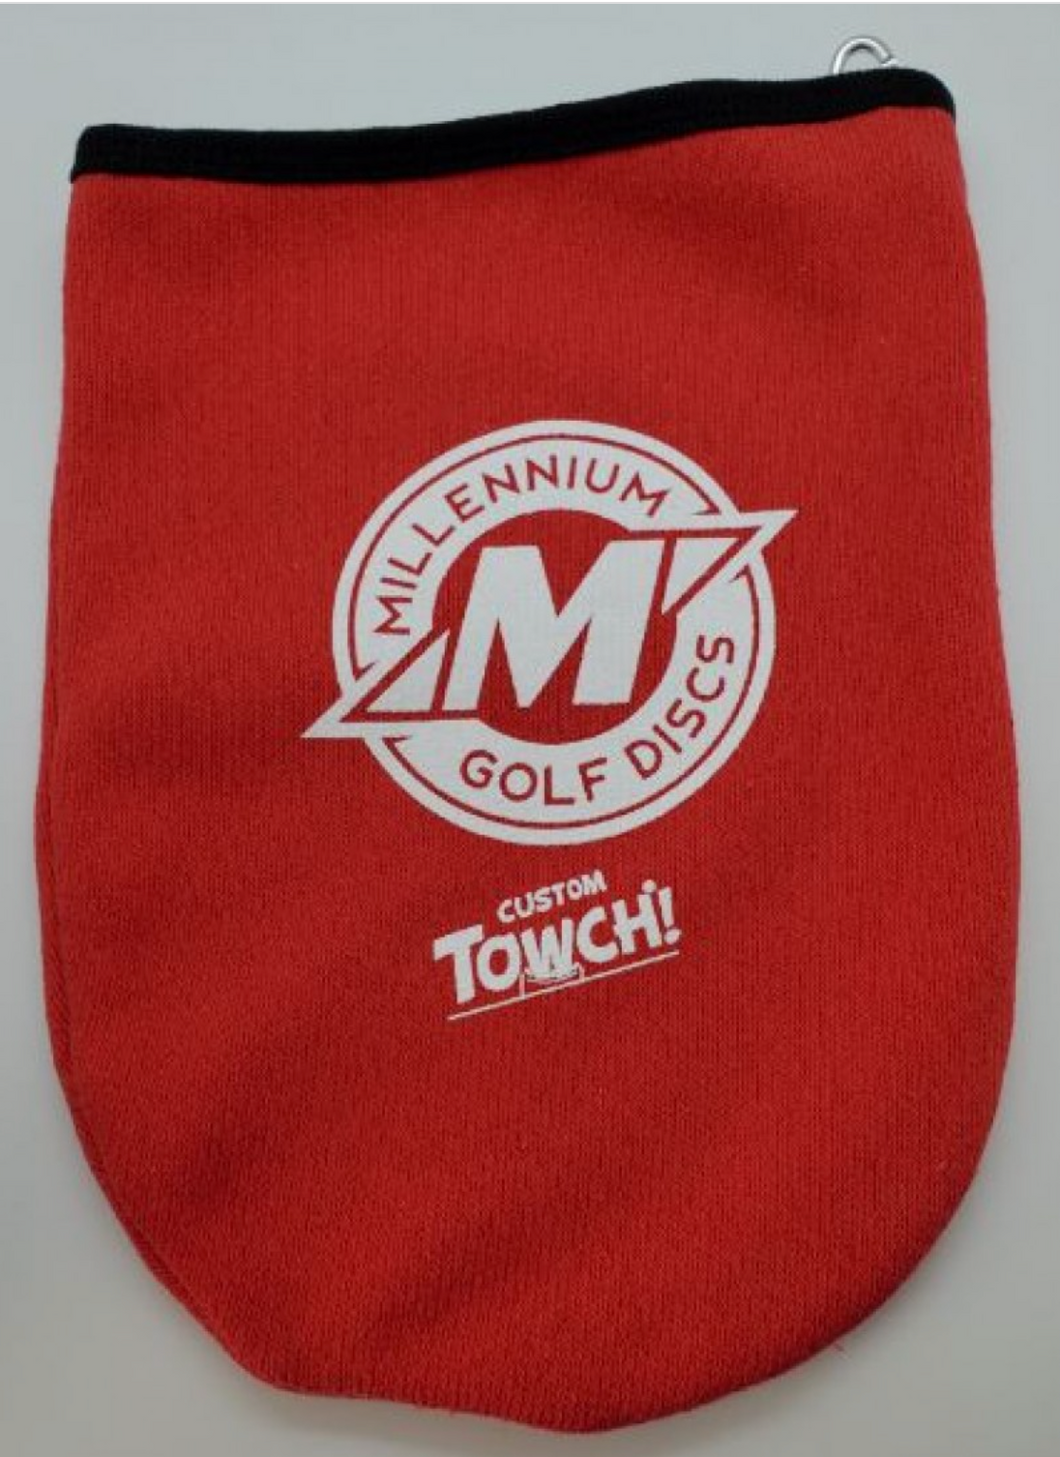 Towch - Millennium Golf Discs